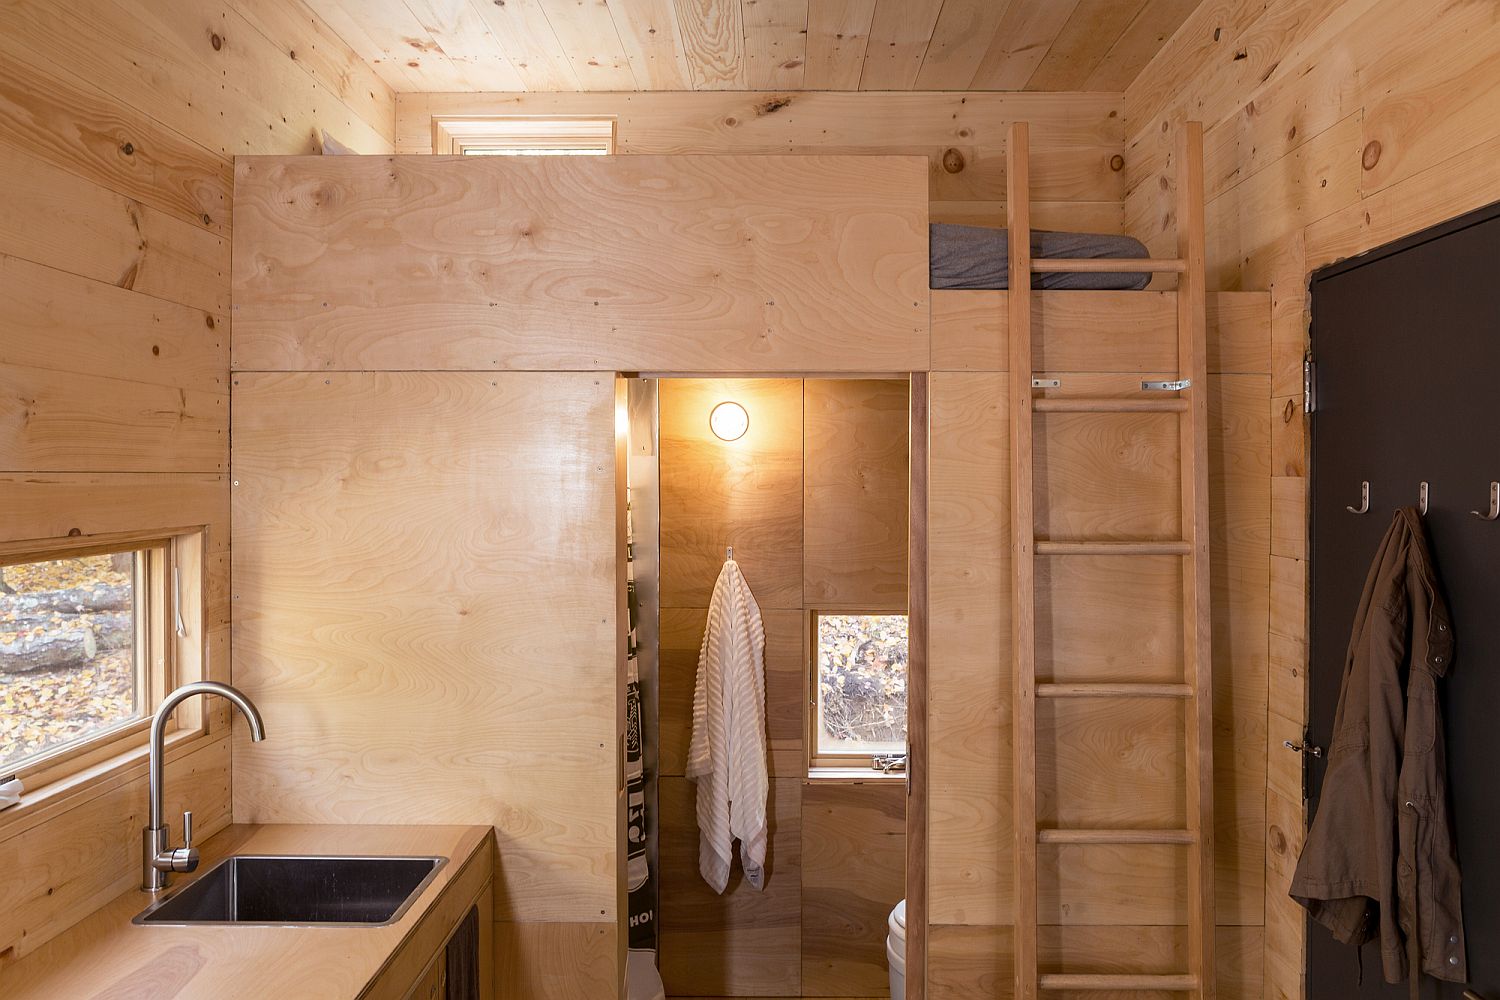 Bathroom below the bunk bed inside the cabin